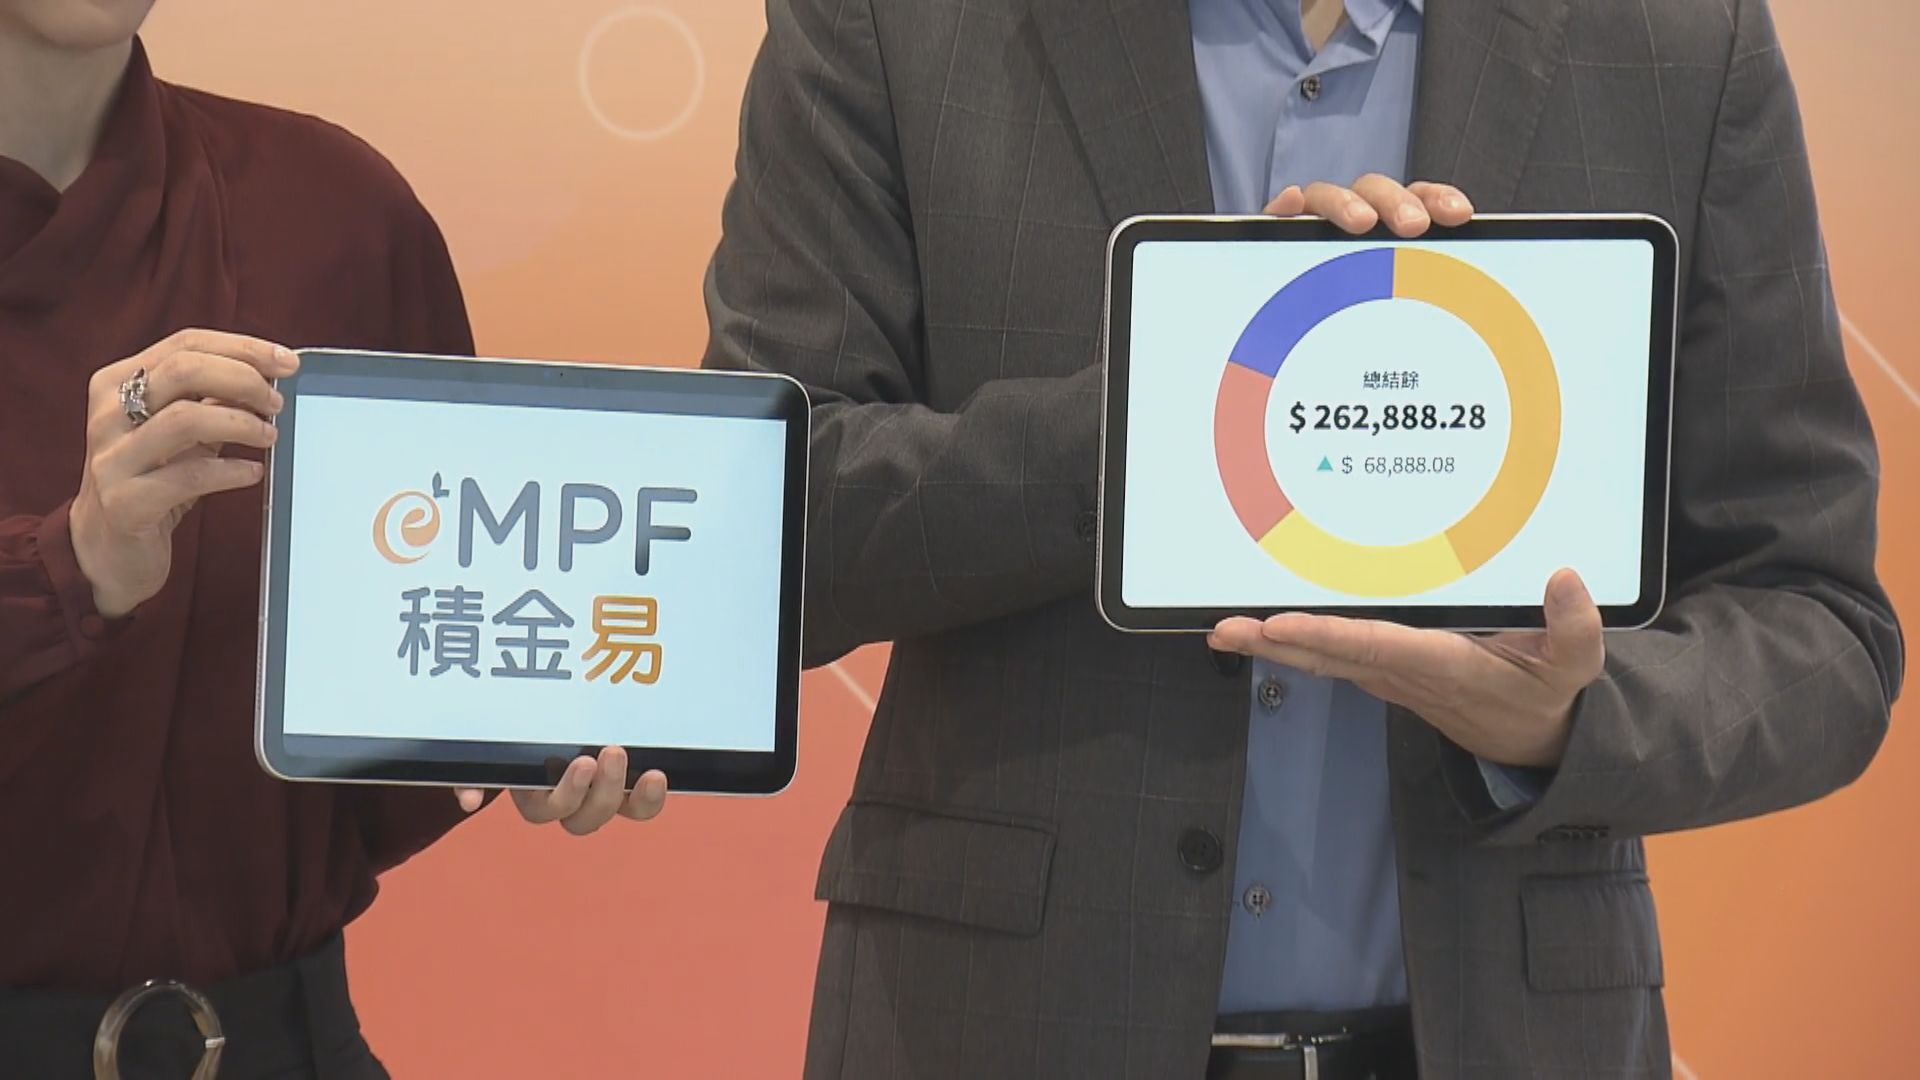 【積金易】積金局料24個MPF計劃明年底可轉到平台